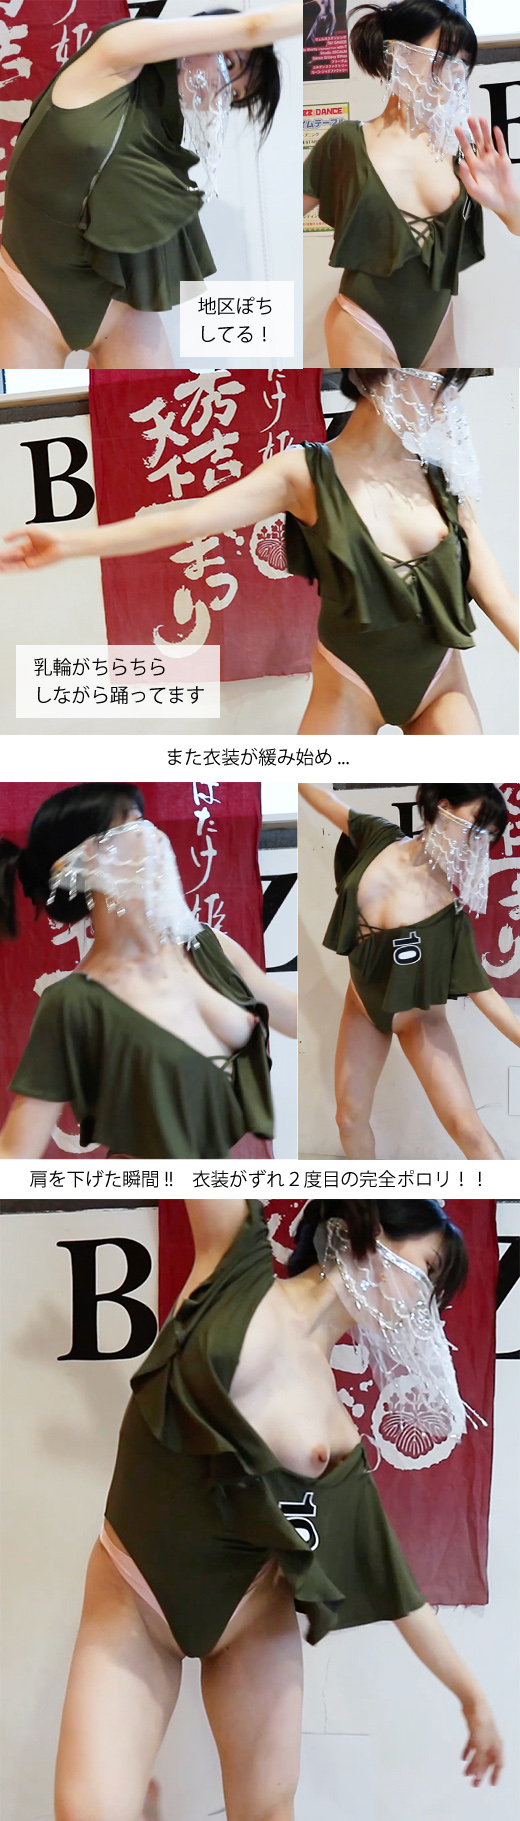 【ハプニング】JAZZダンス発表会でセクシー衣装がズレておっぱいポ口りしたダンサー gallery photo 3